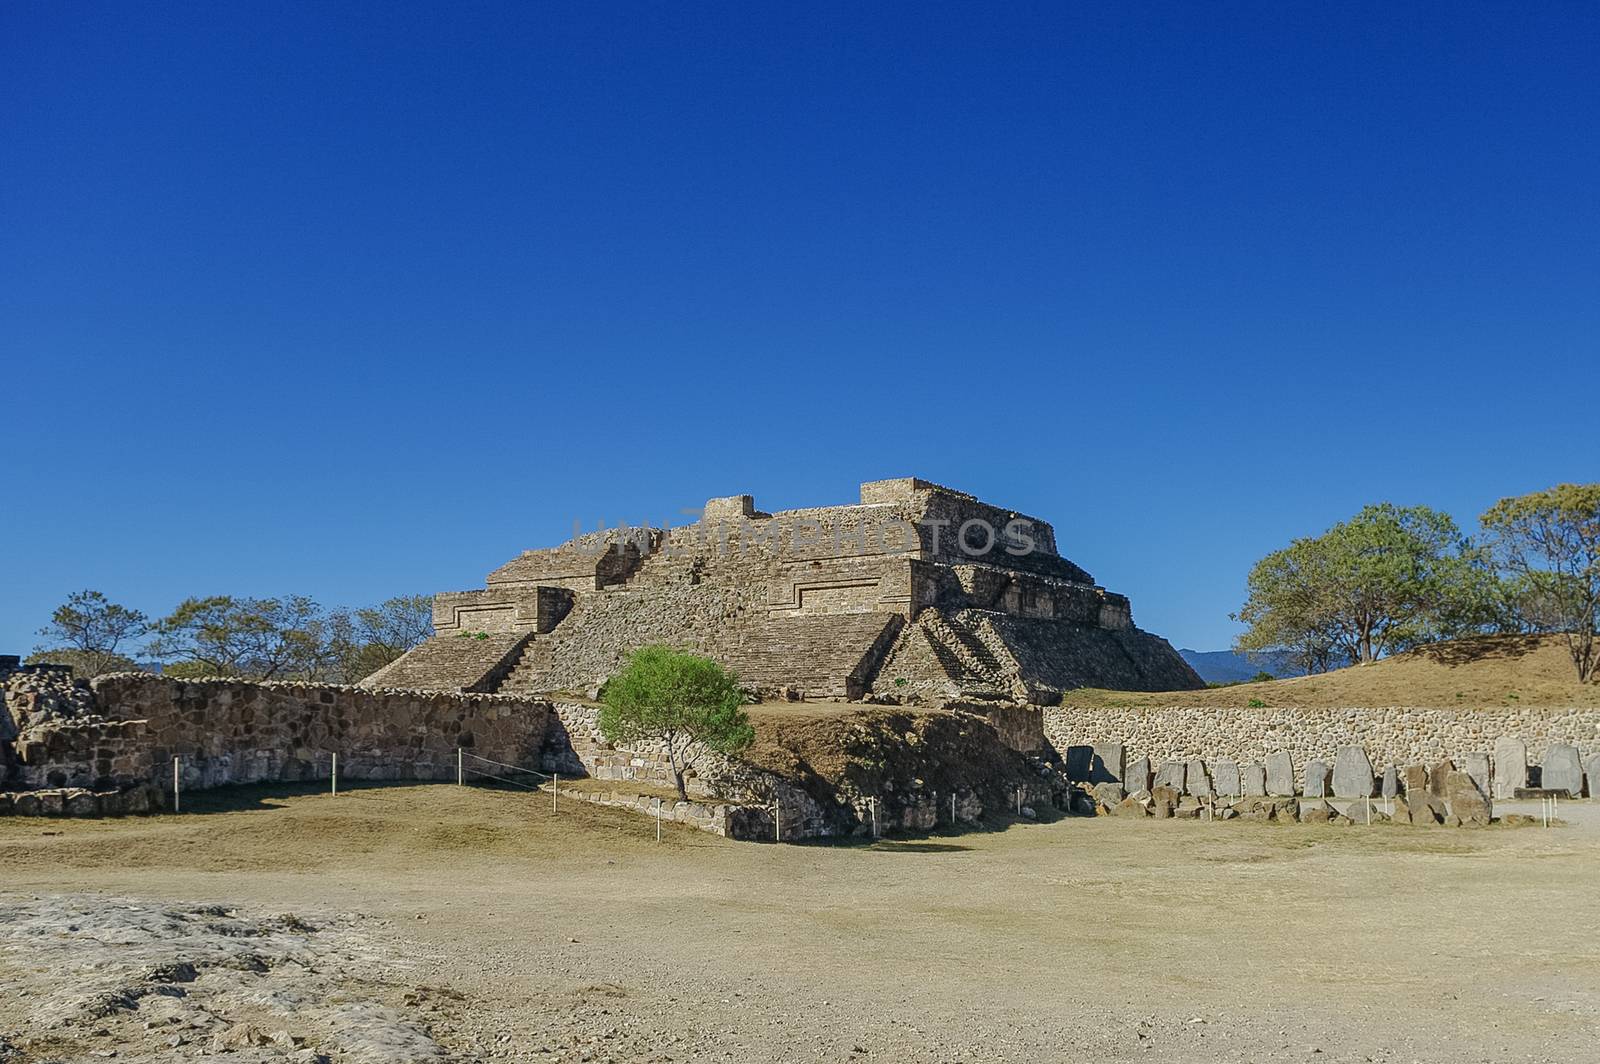 Monte Alban - the ruins of the Zapotec civilization in Oaxaca, Mexico